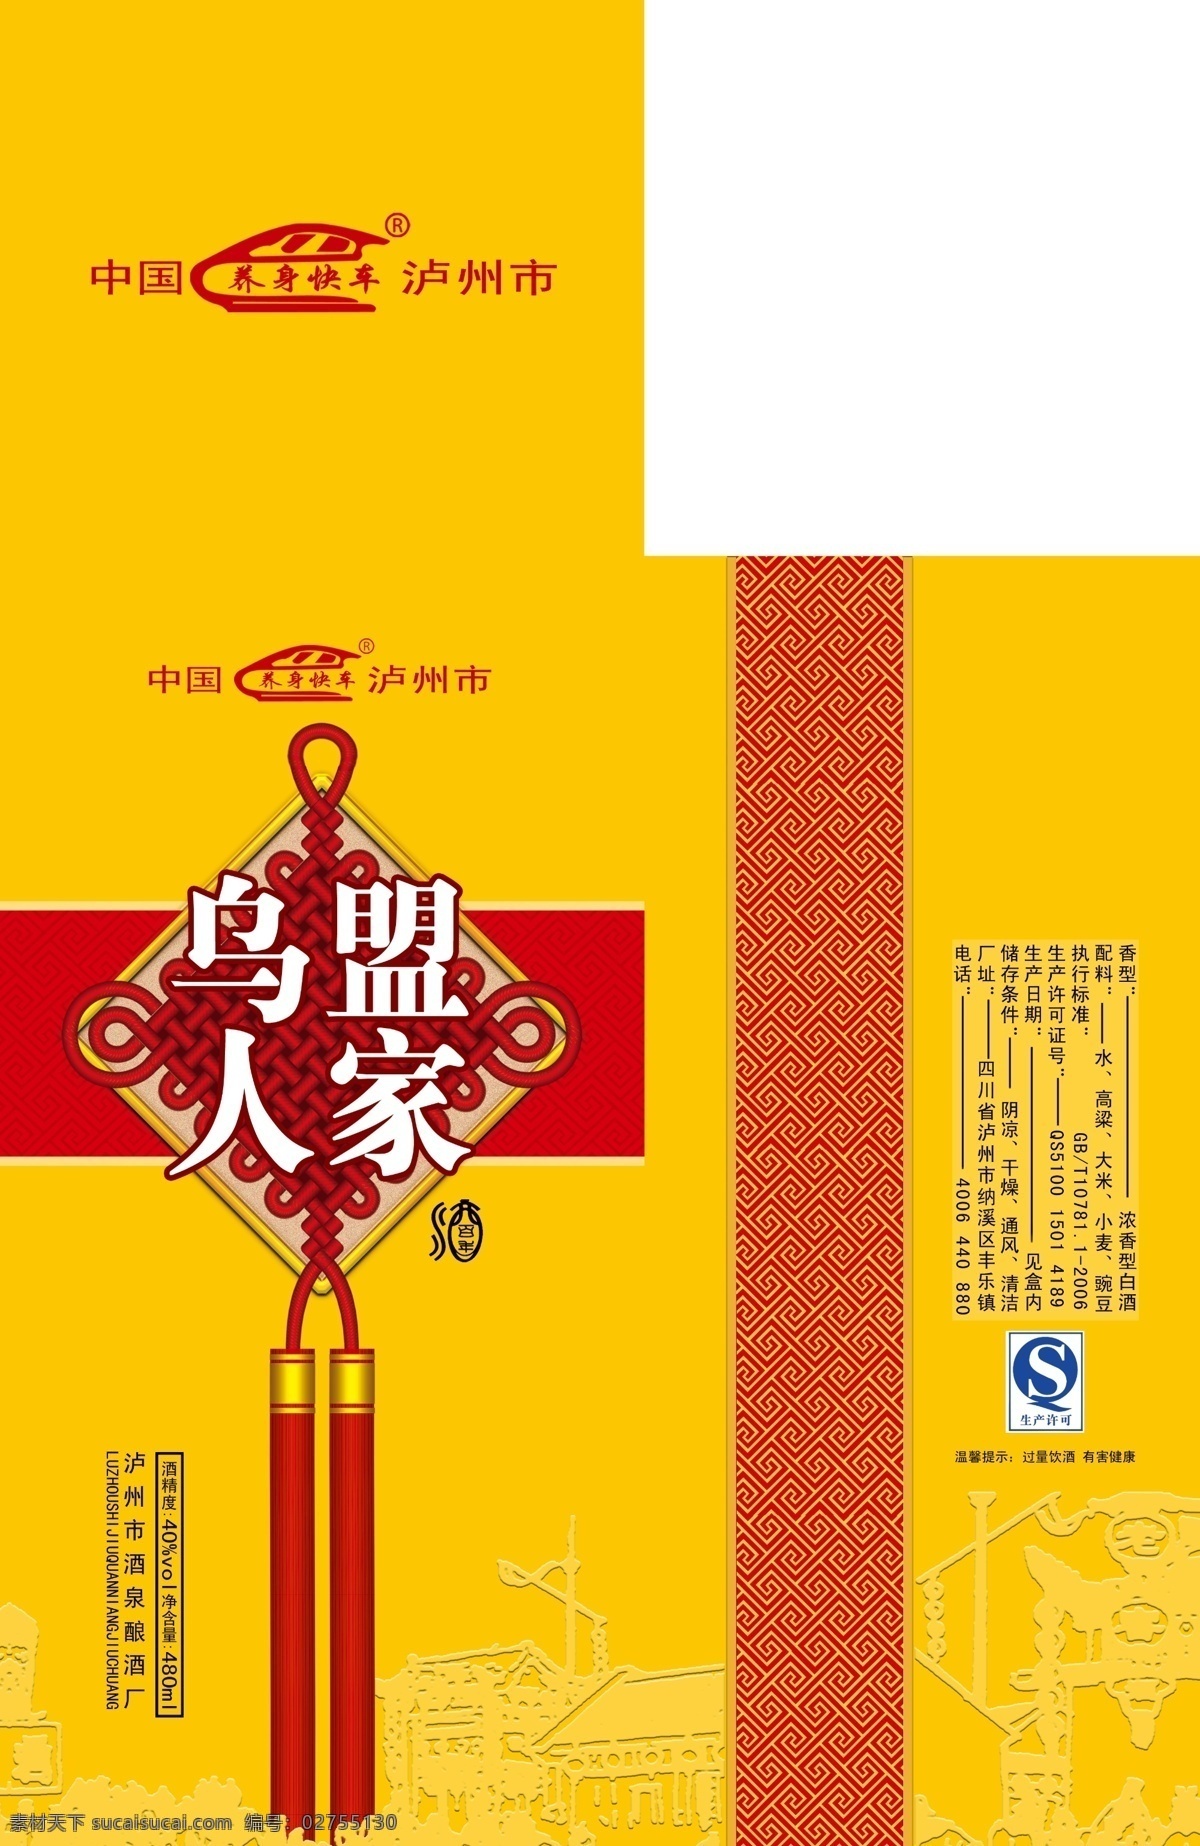 酒盒子 黄色酒盒子 酒包装 包装设计 设计小元素 设计素材 中国结素材 古建筑素材 分层素材 平面设计素材 包装设计素材 分层